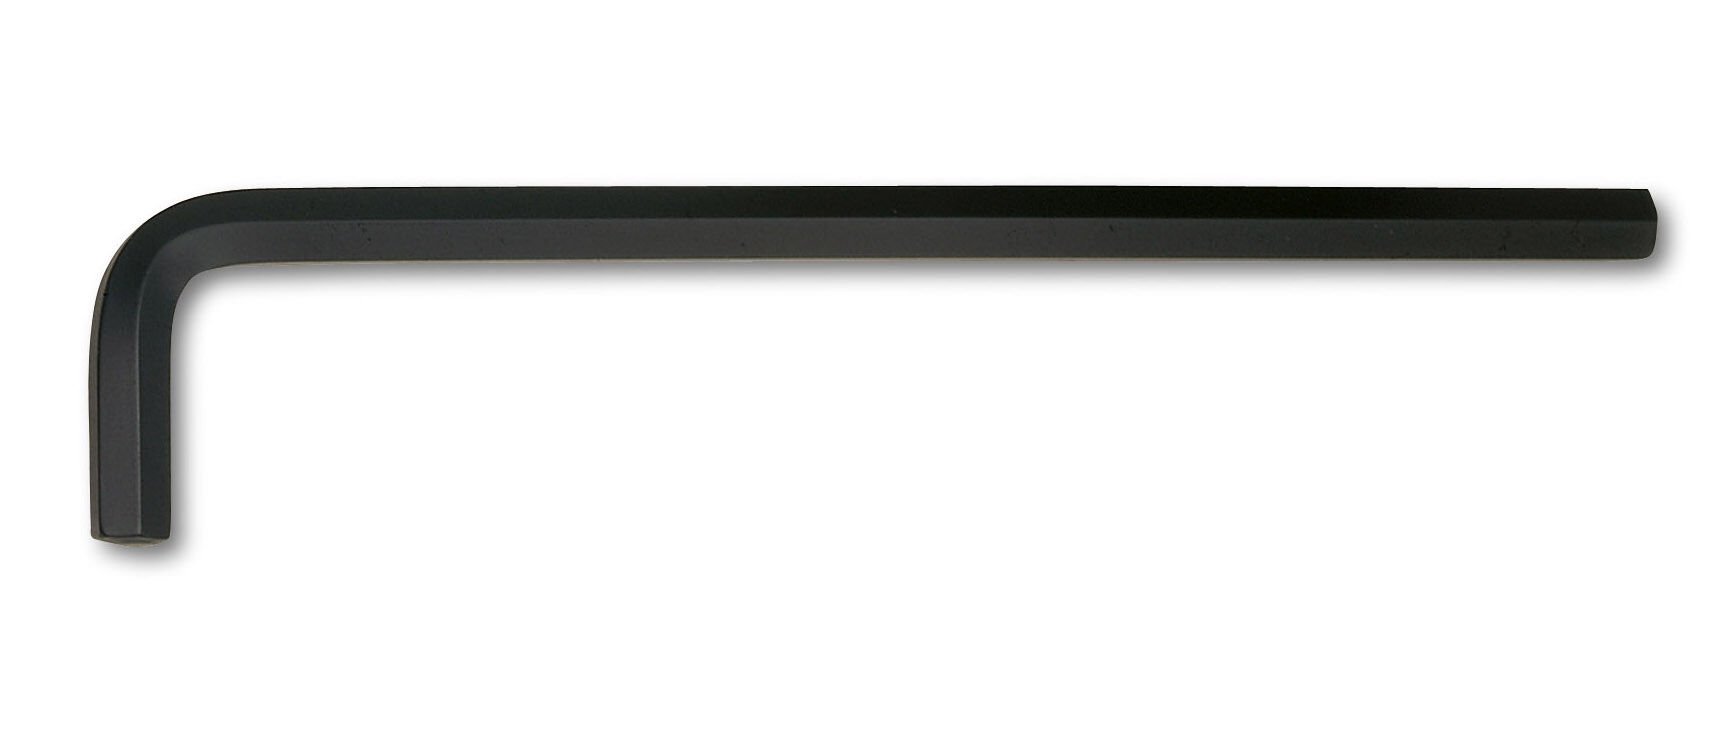 Heyco Allen Anahtar Uzun Boy 2.5mm